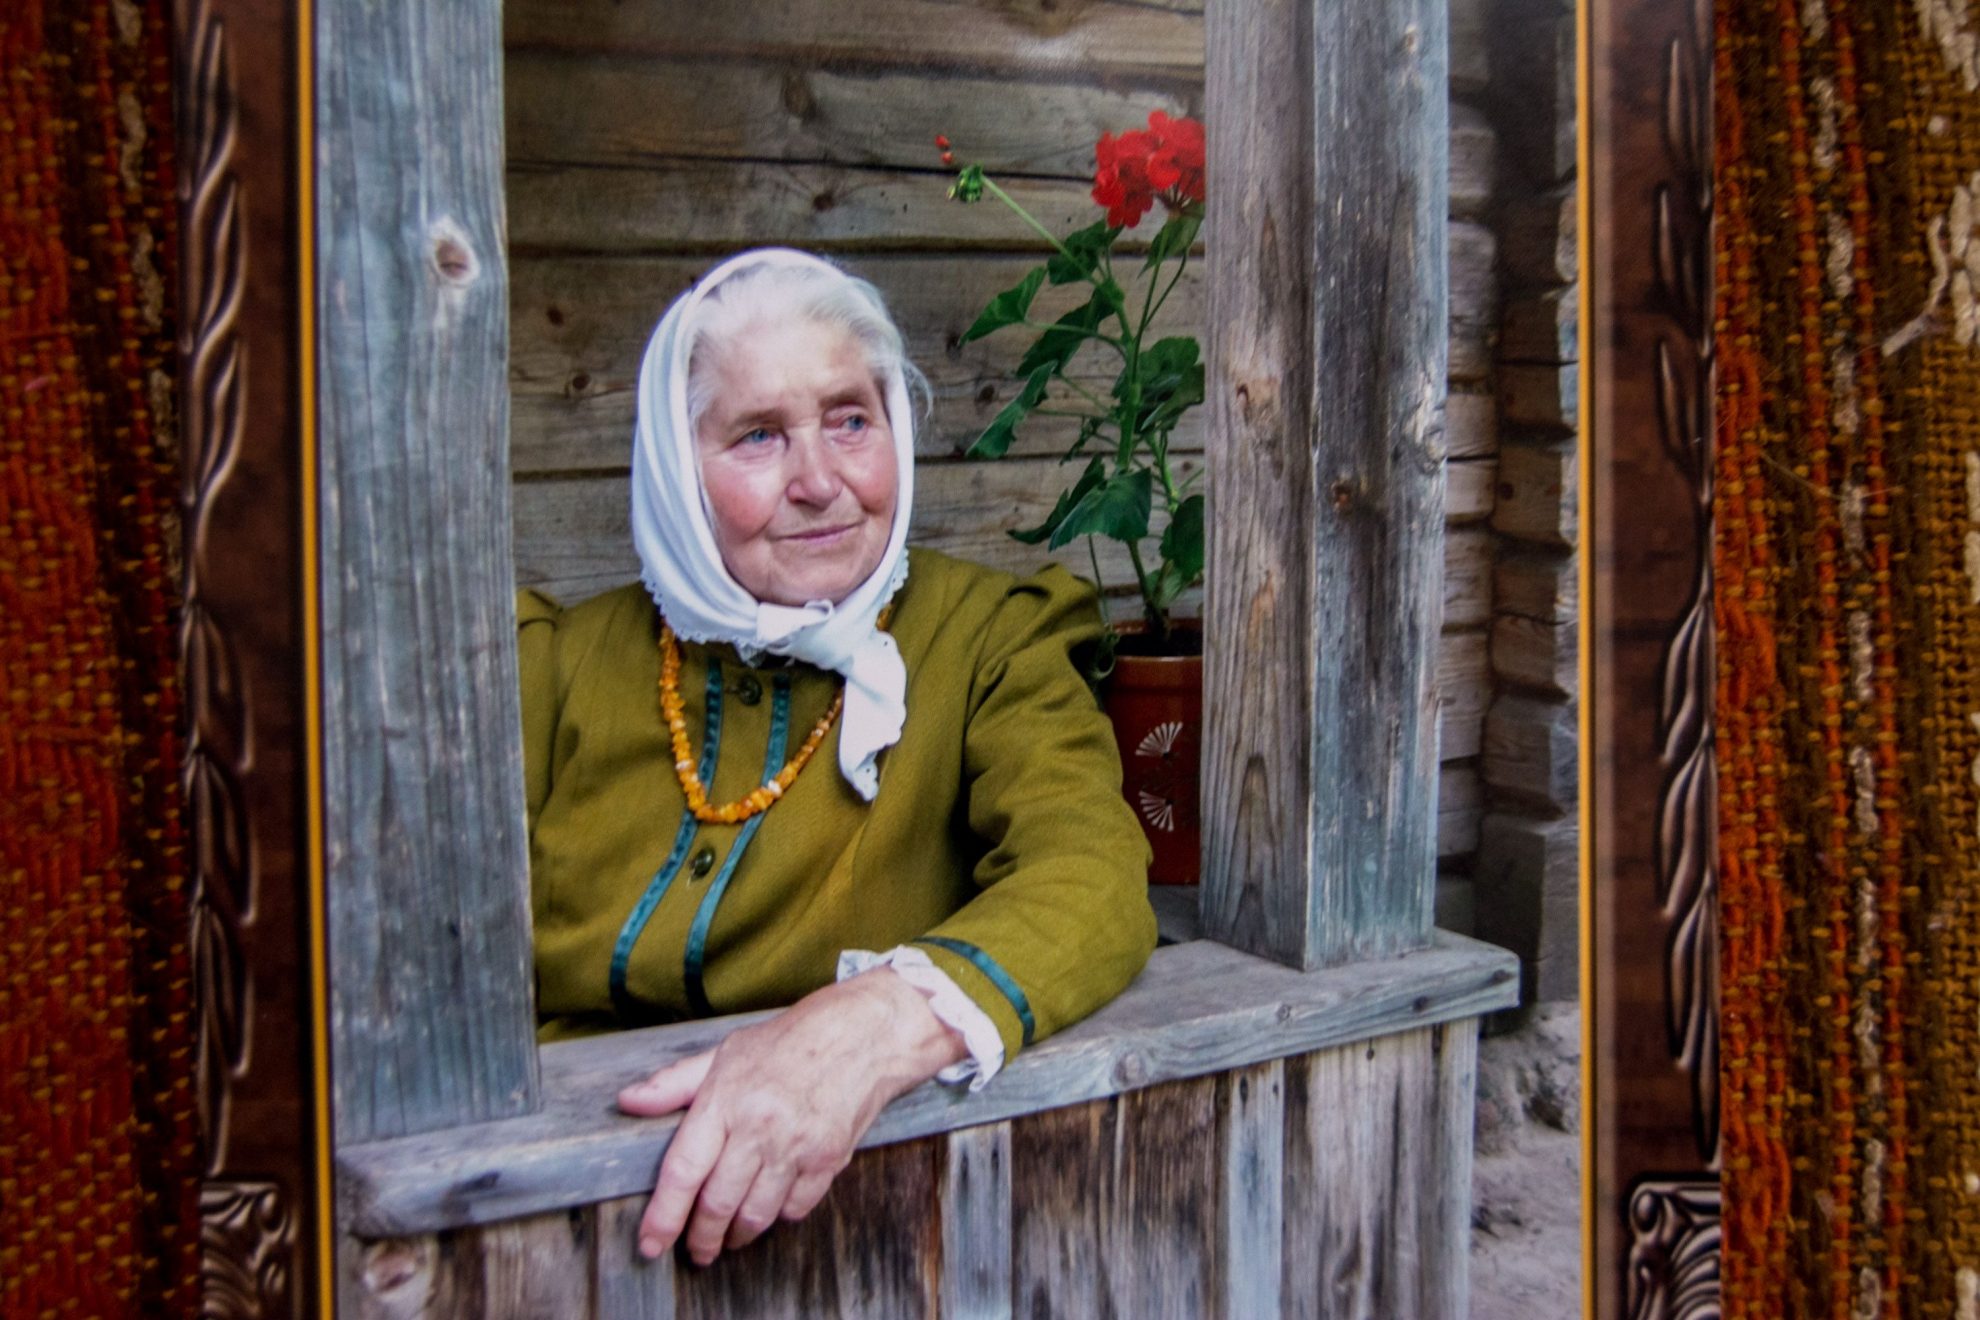 Šeduvos baba visos Lietuvos vadinama etnografė Emilija Brajinskienė yra sukaupusi tūkstančius folkloro eksponatų – papročių, dainų, patarlių, legendų, pasakų.